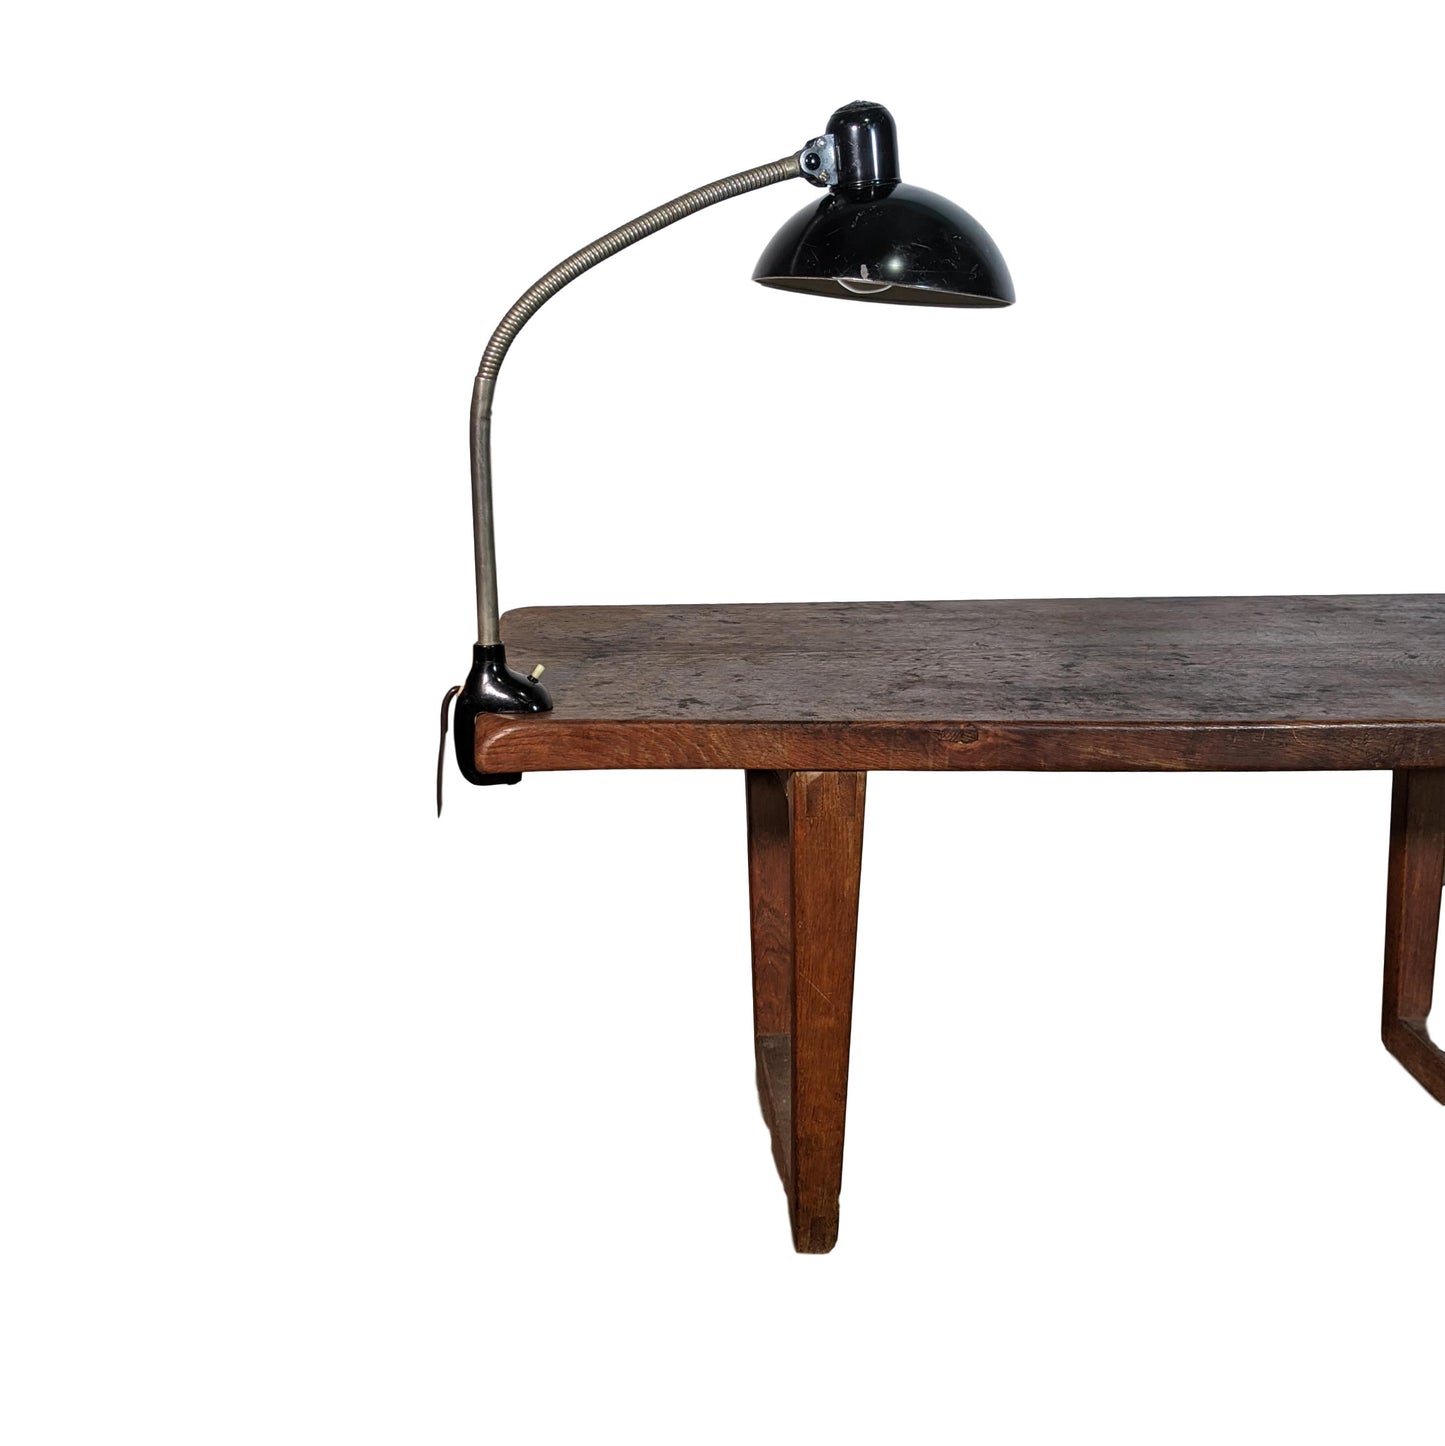 Kaiser iDell Model 6740 Table Lamp by Christian Dell